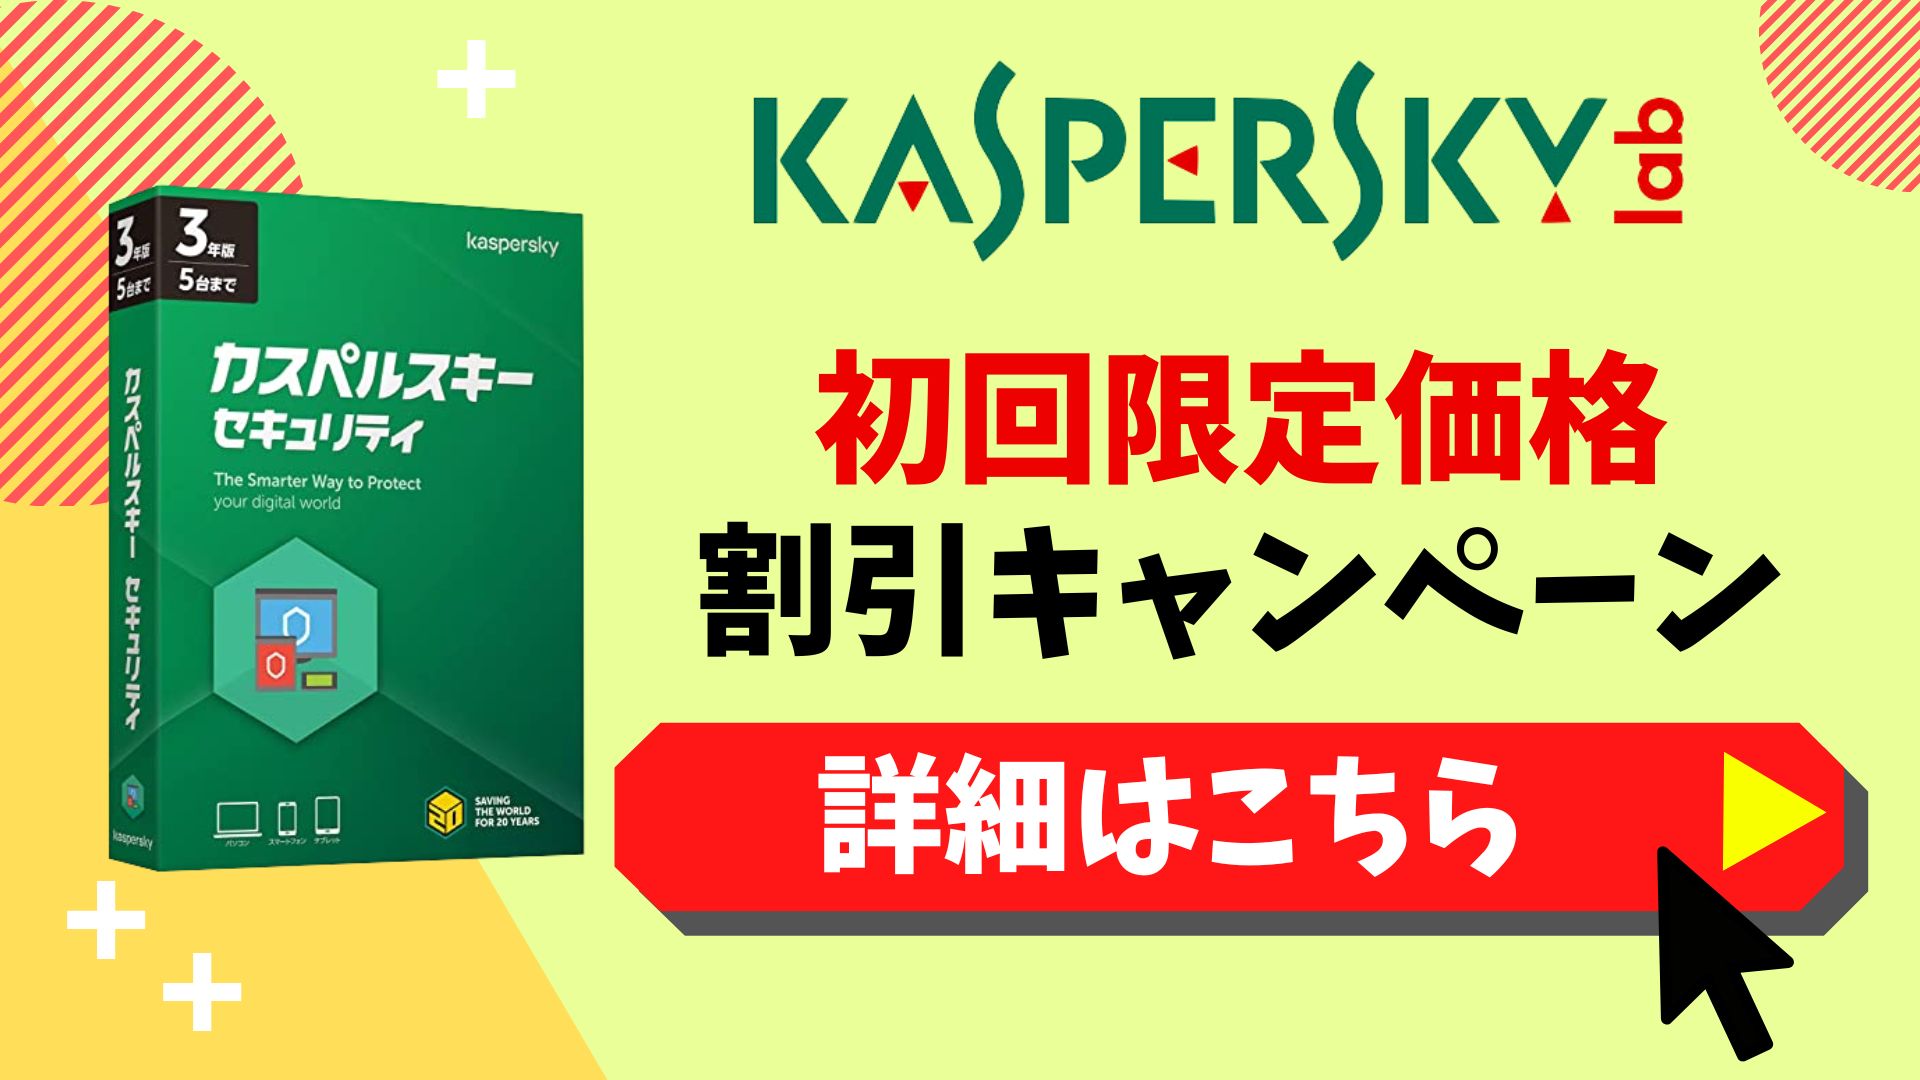 【期間限定】カスペルスキー初回限定価格キャンペーン